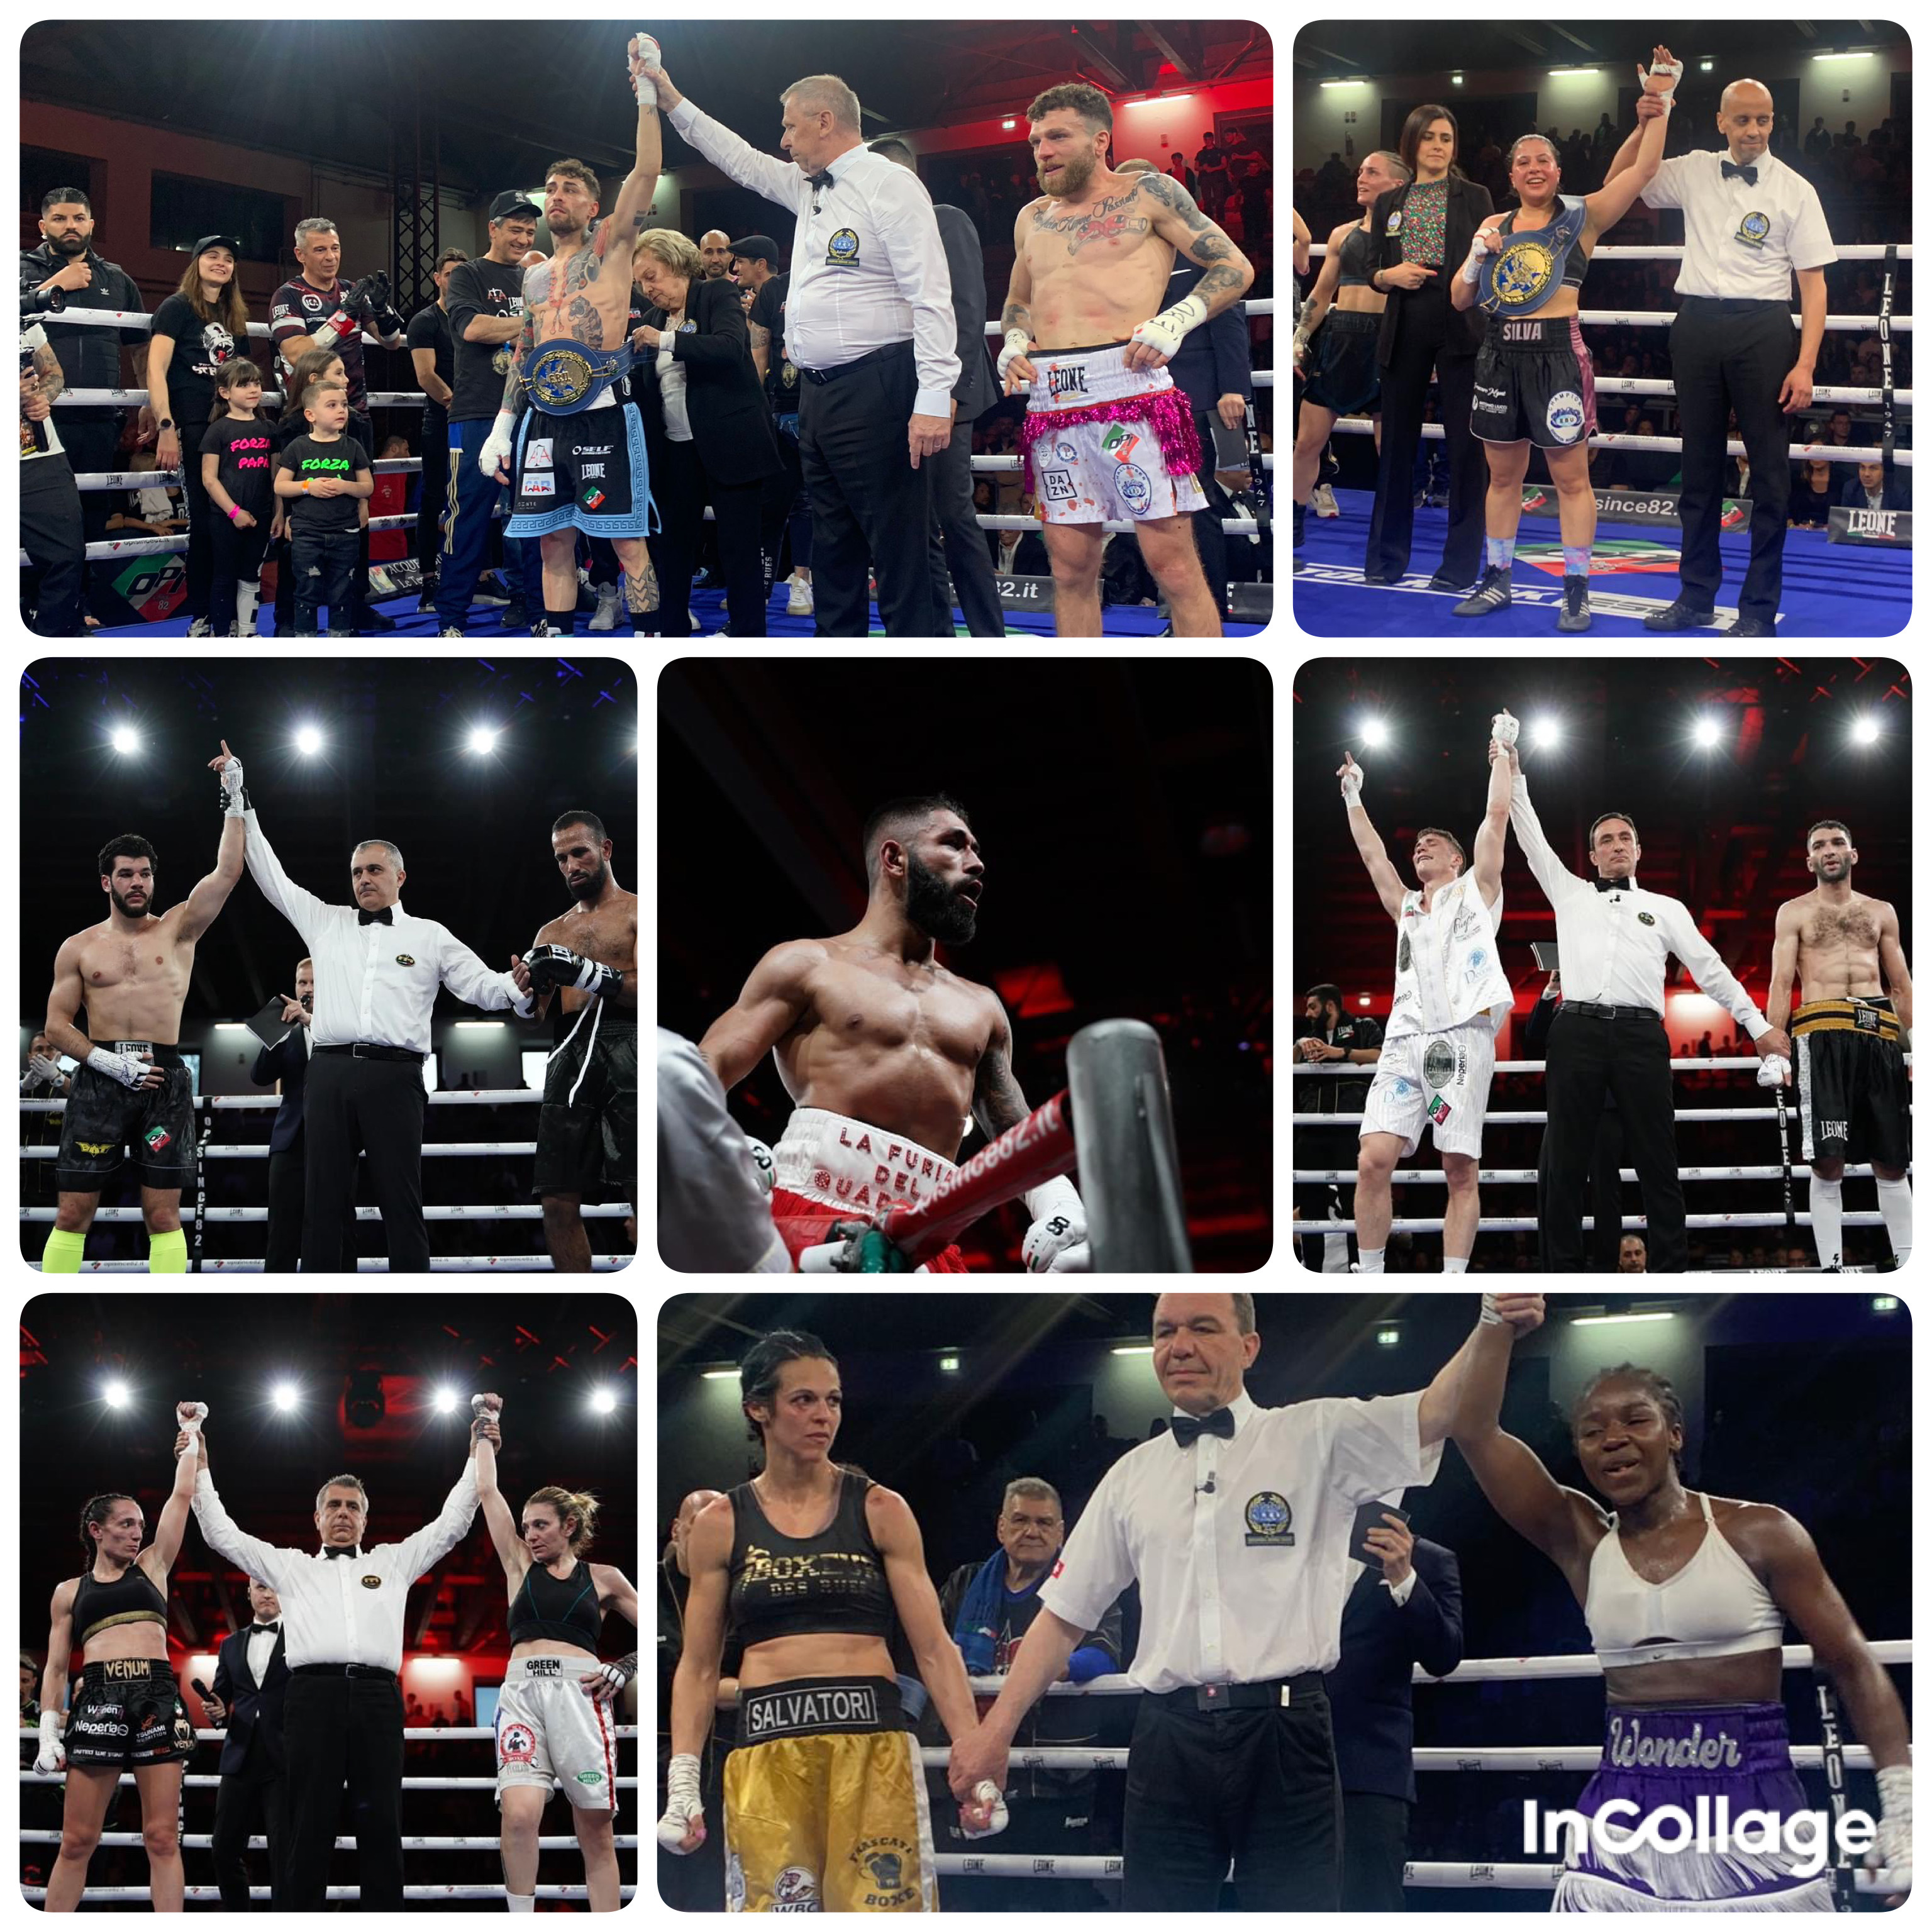 Tivoli Boxing Night - Spettacolare la Serata OPI 82 con tre titoli Europei in Palio 